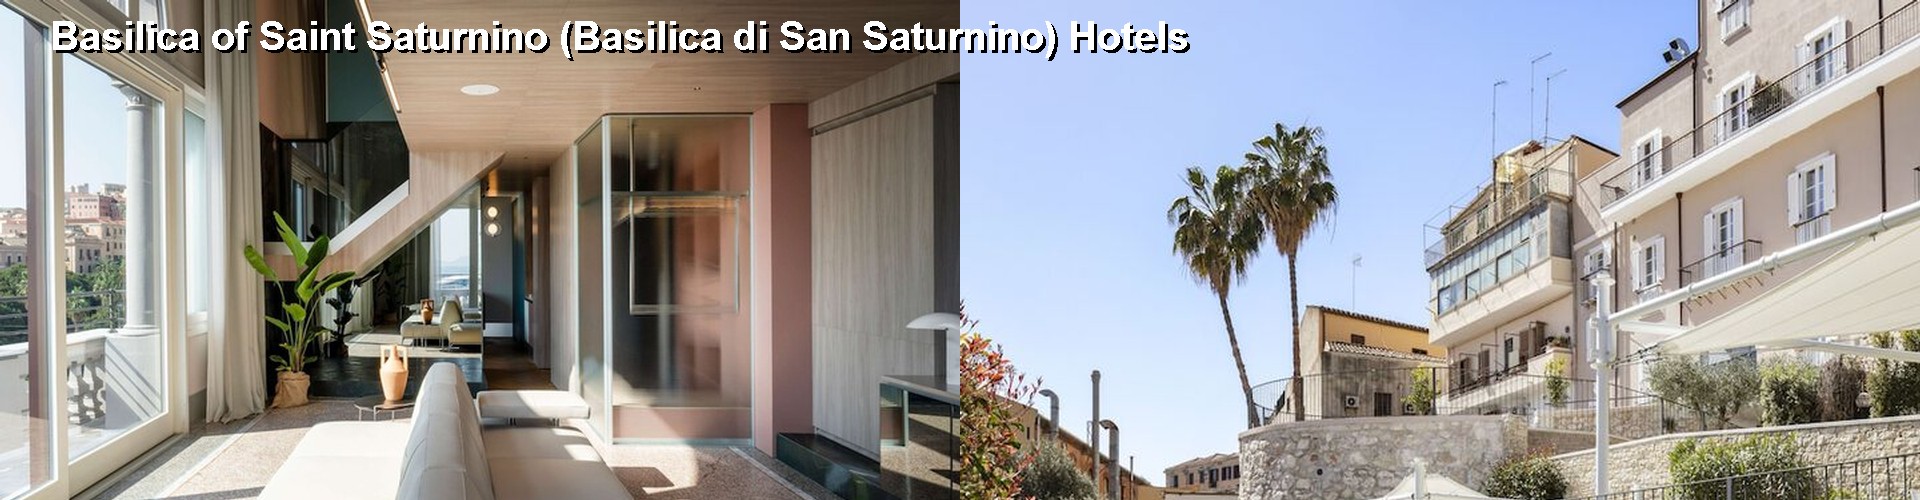 5 Best Hotels near Basilica of Saint Saturnino (Basilica di San Saturnino)